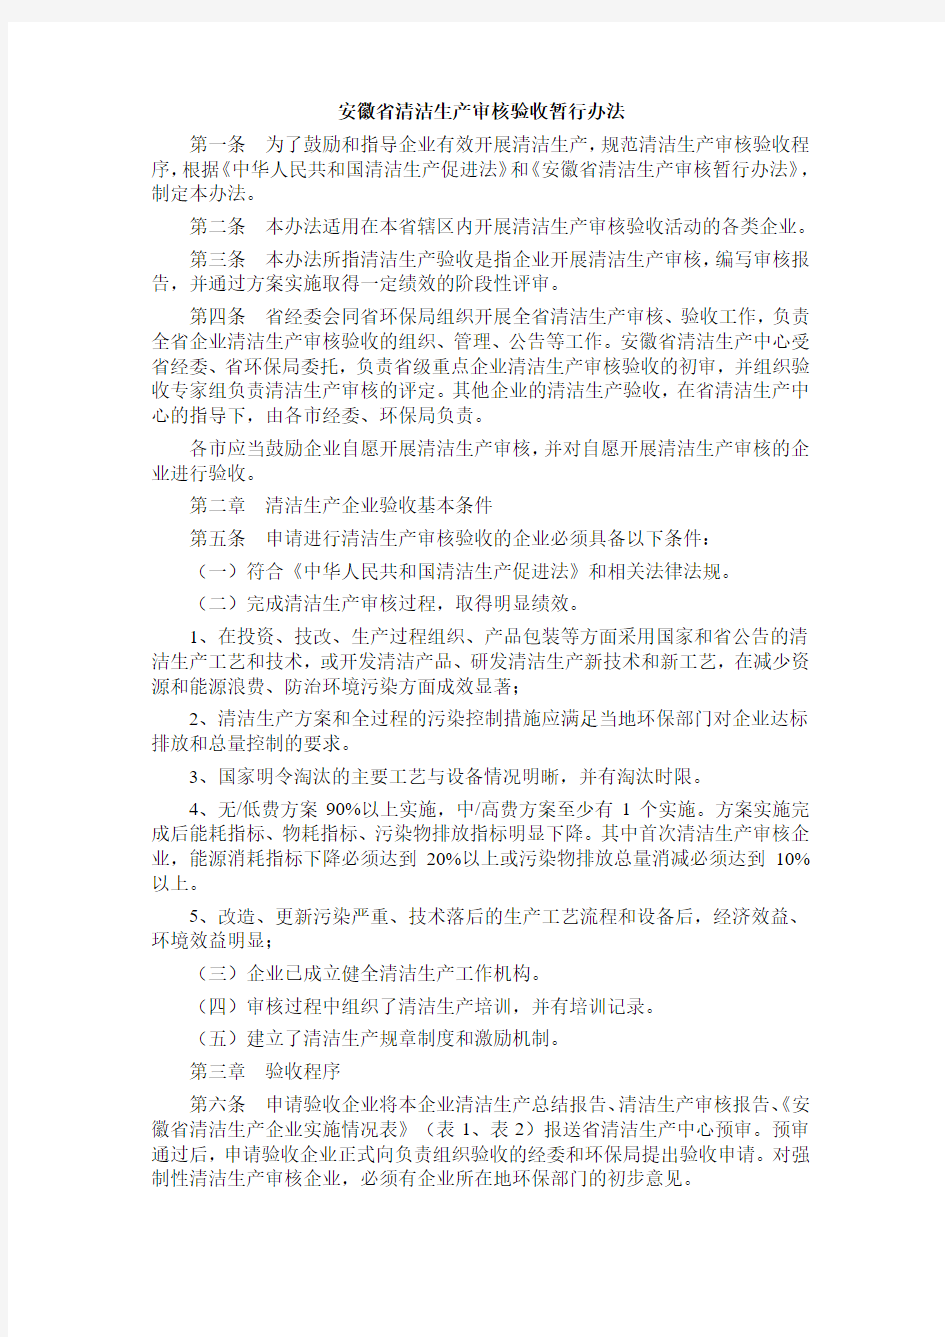 安徽省清洁生产审核验收暂行办法